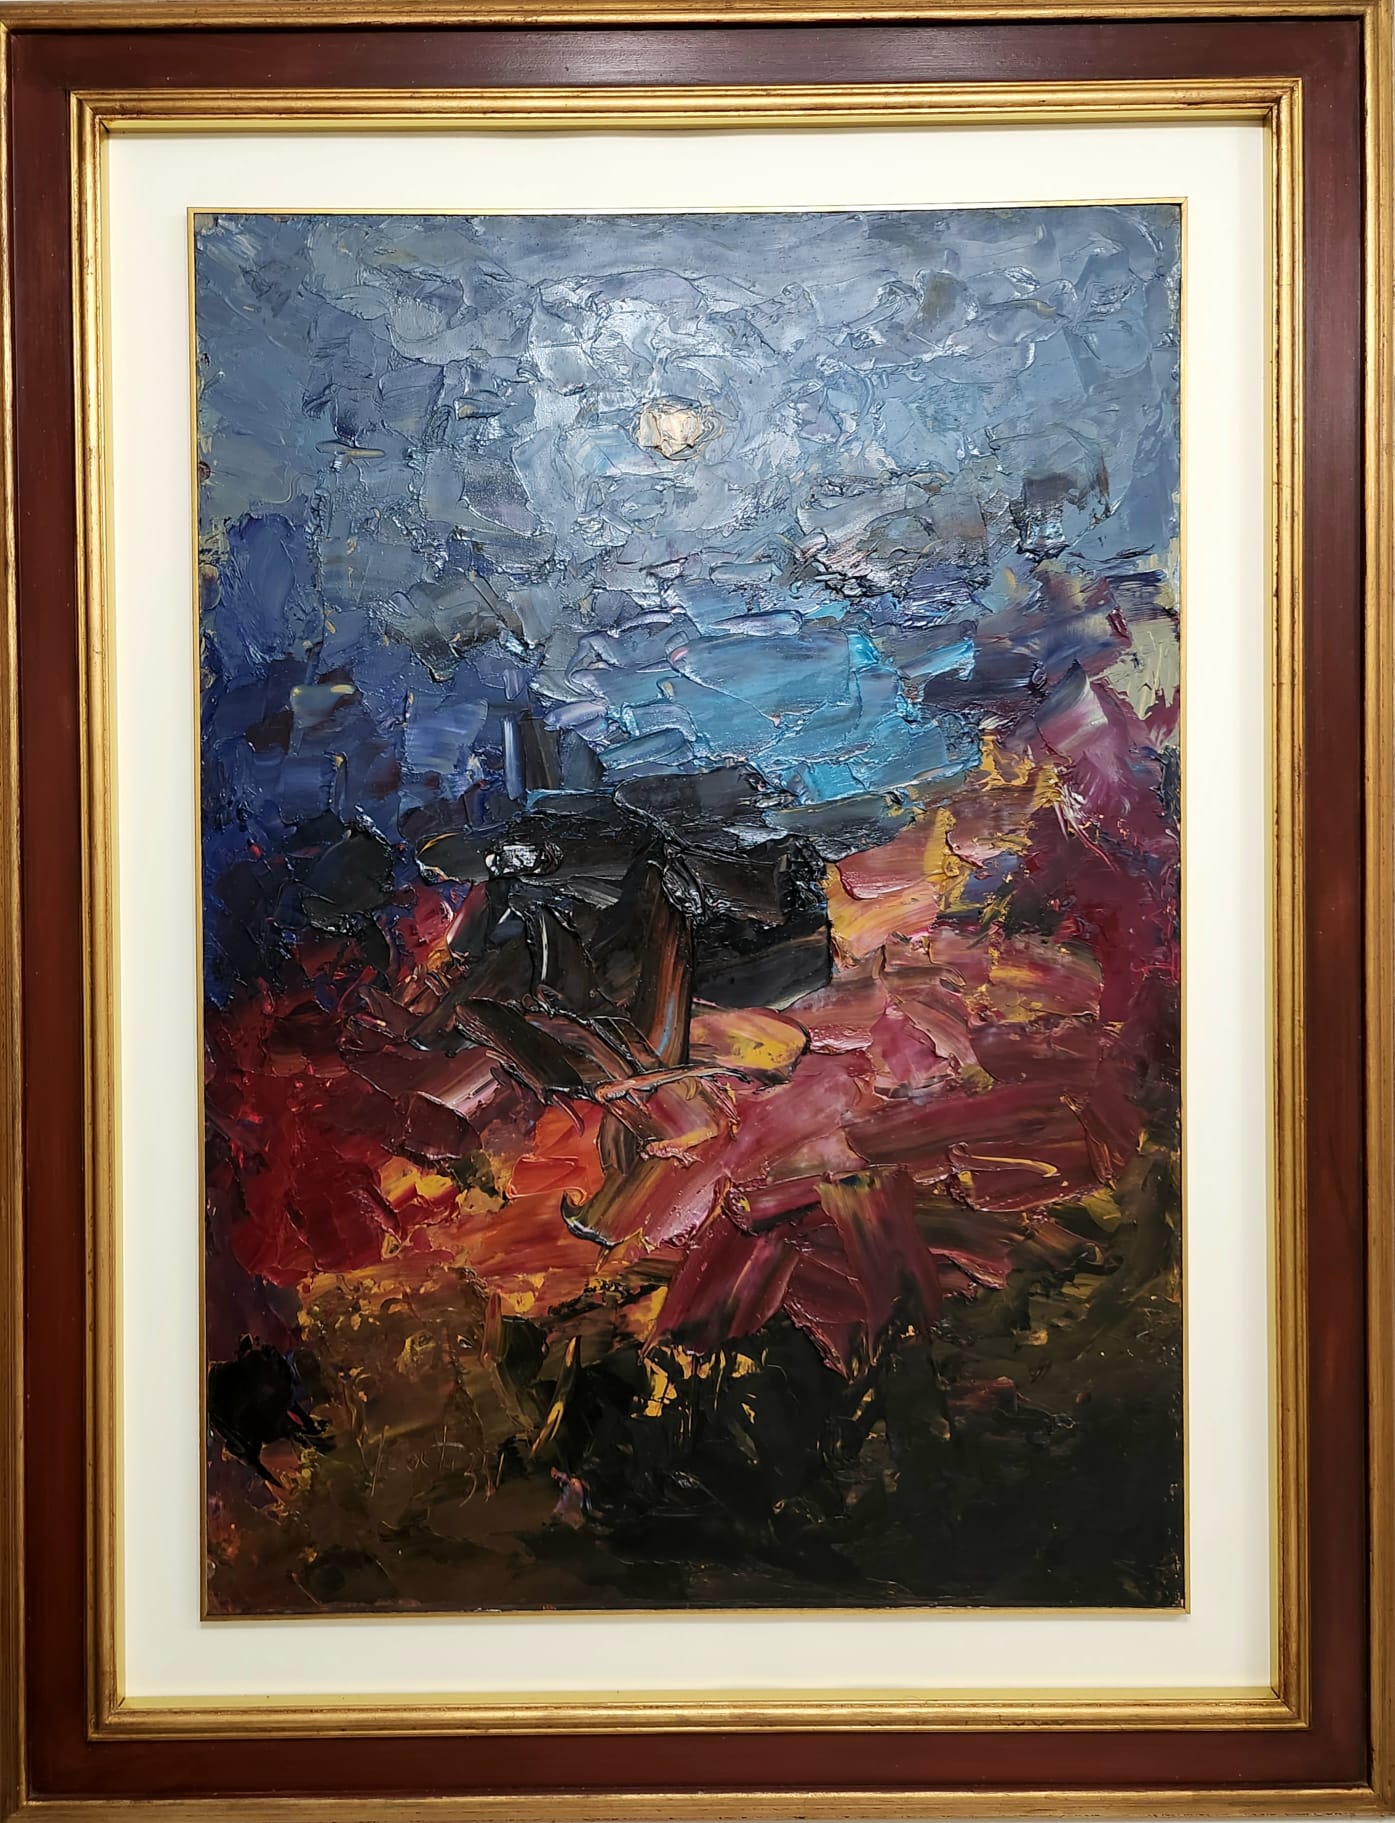 Sergio Scatizzi, Notte di luna, olio su tavola, cm 100x70, 2001